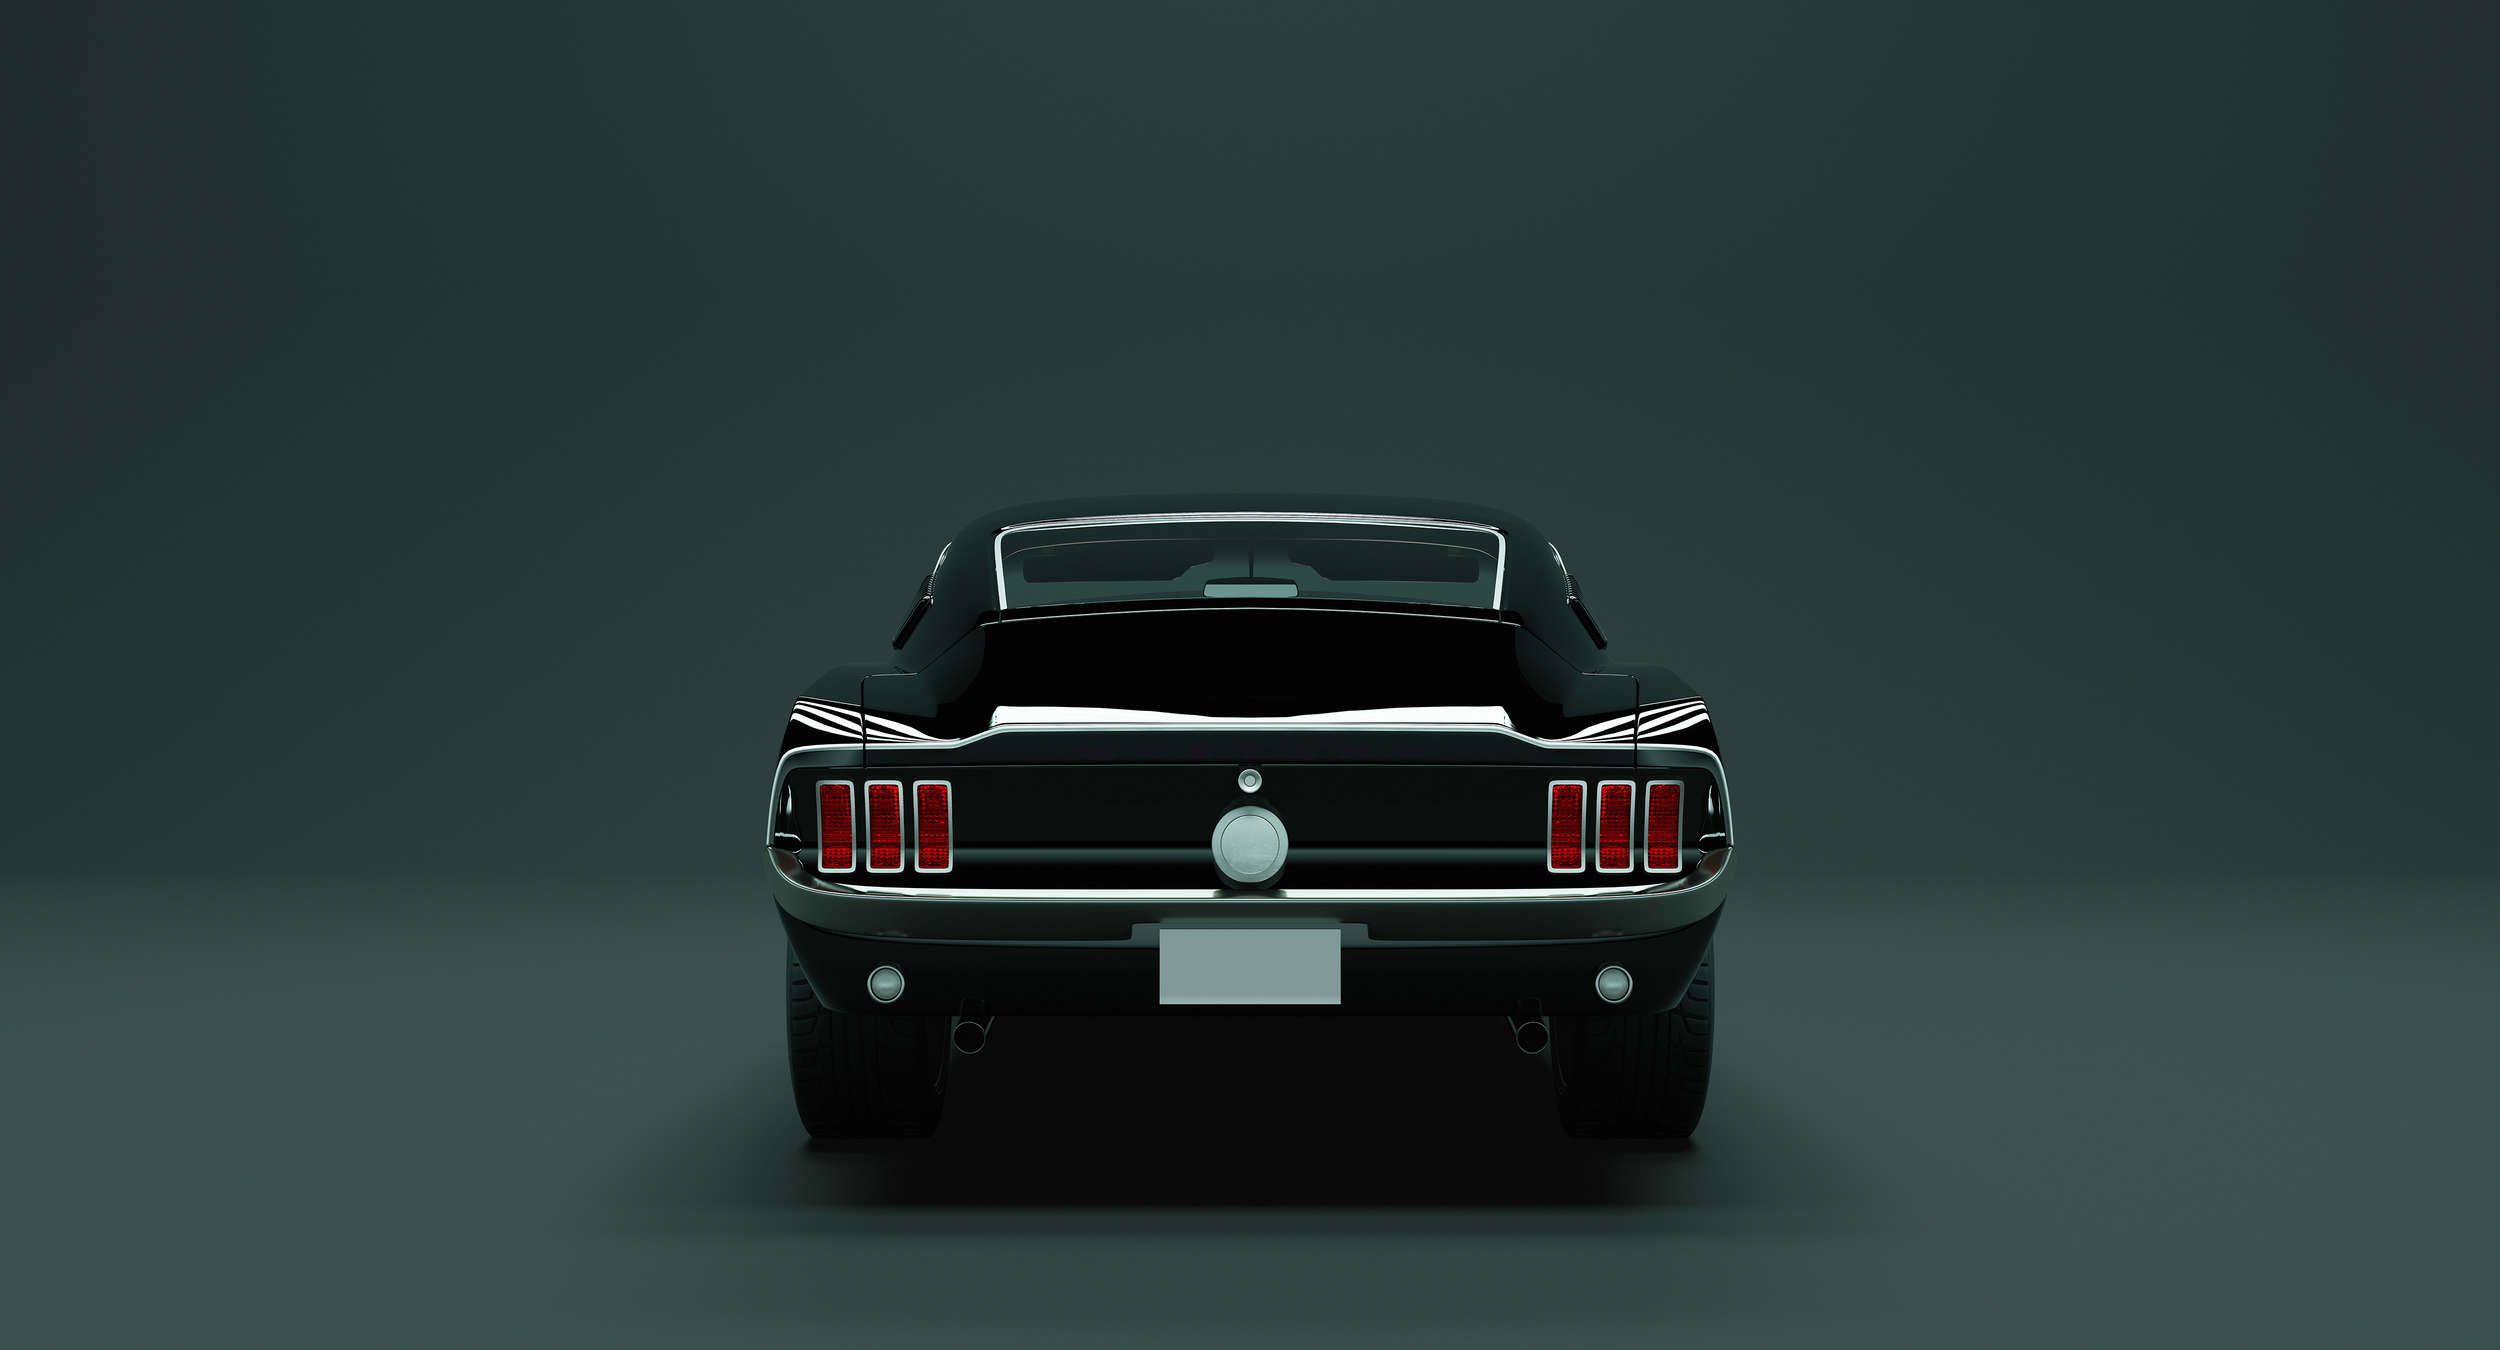             Mustang 3 - Papel pintado de American Muscle Car - Azul, Negro | Premium Smooth Fleece
        